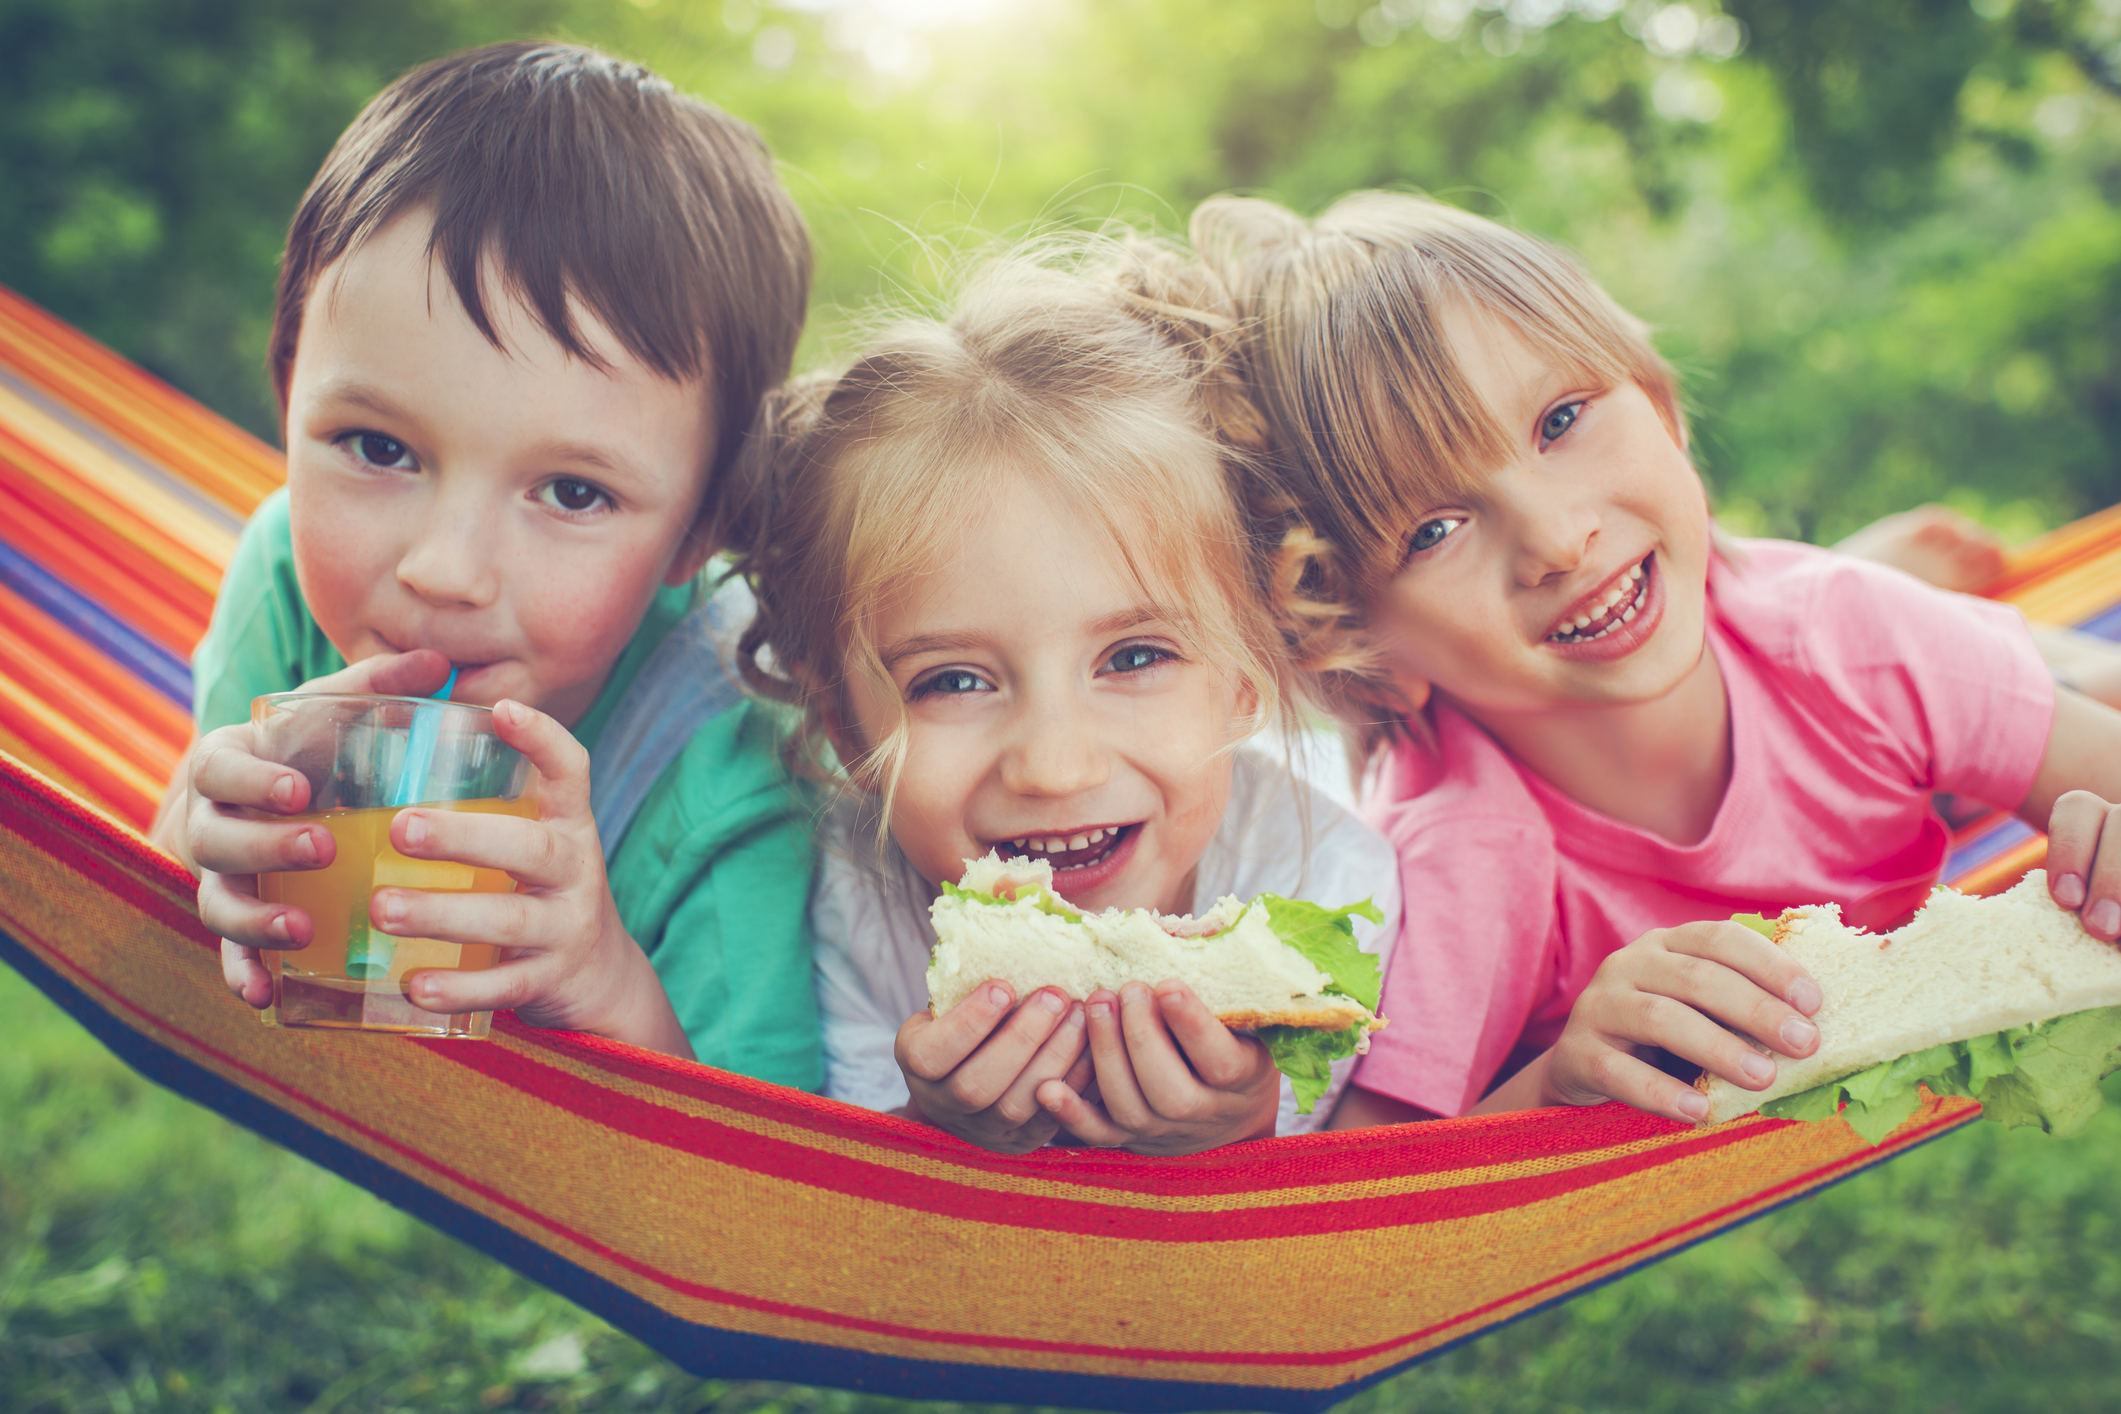 Τι αλλάζει στην διατροφή του παιδιού το καλοκαίρι; Η ειδικός απαντάει!